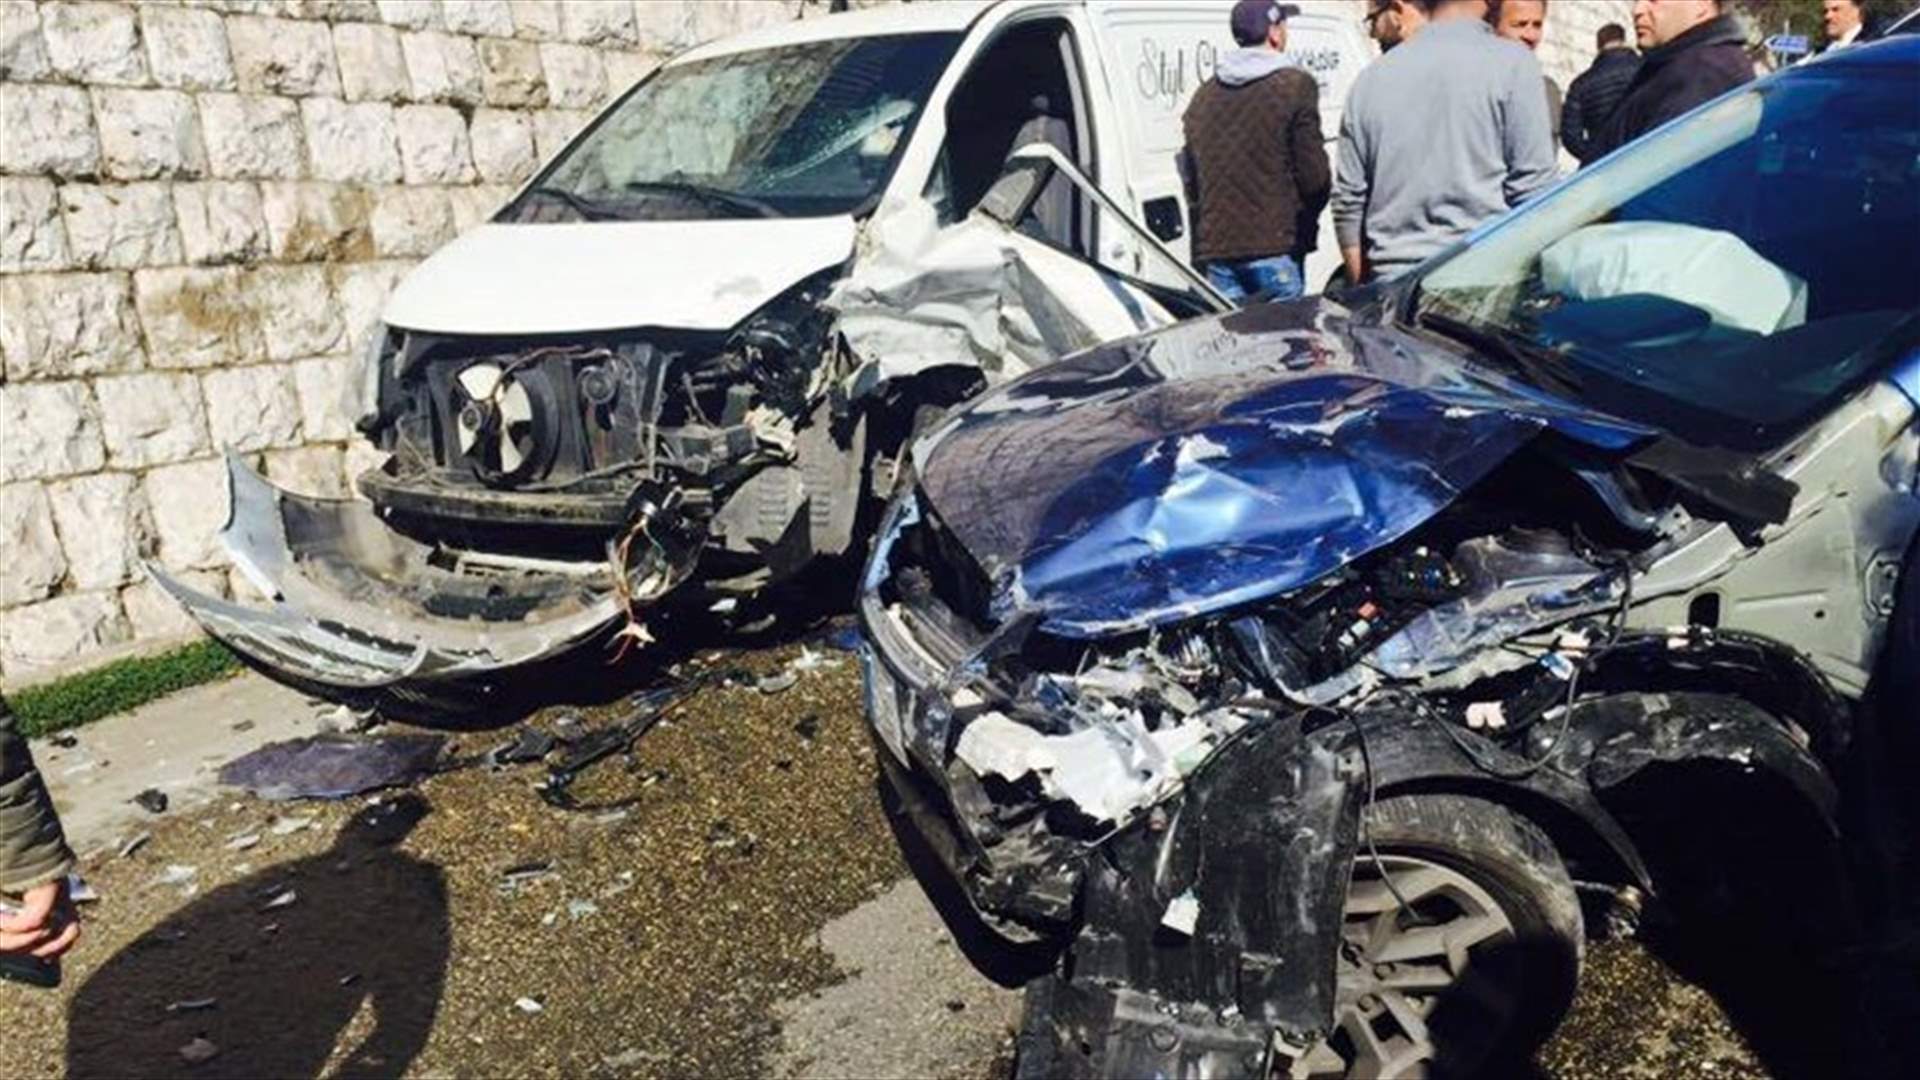  بالصور- حادث سير بين 3 سيارات في عجلتون